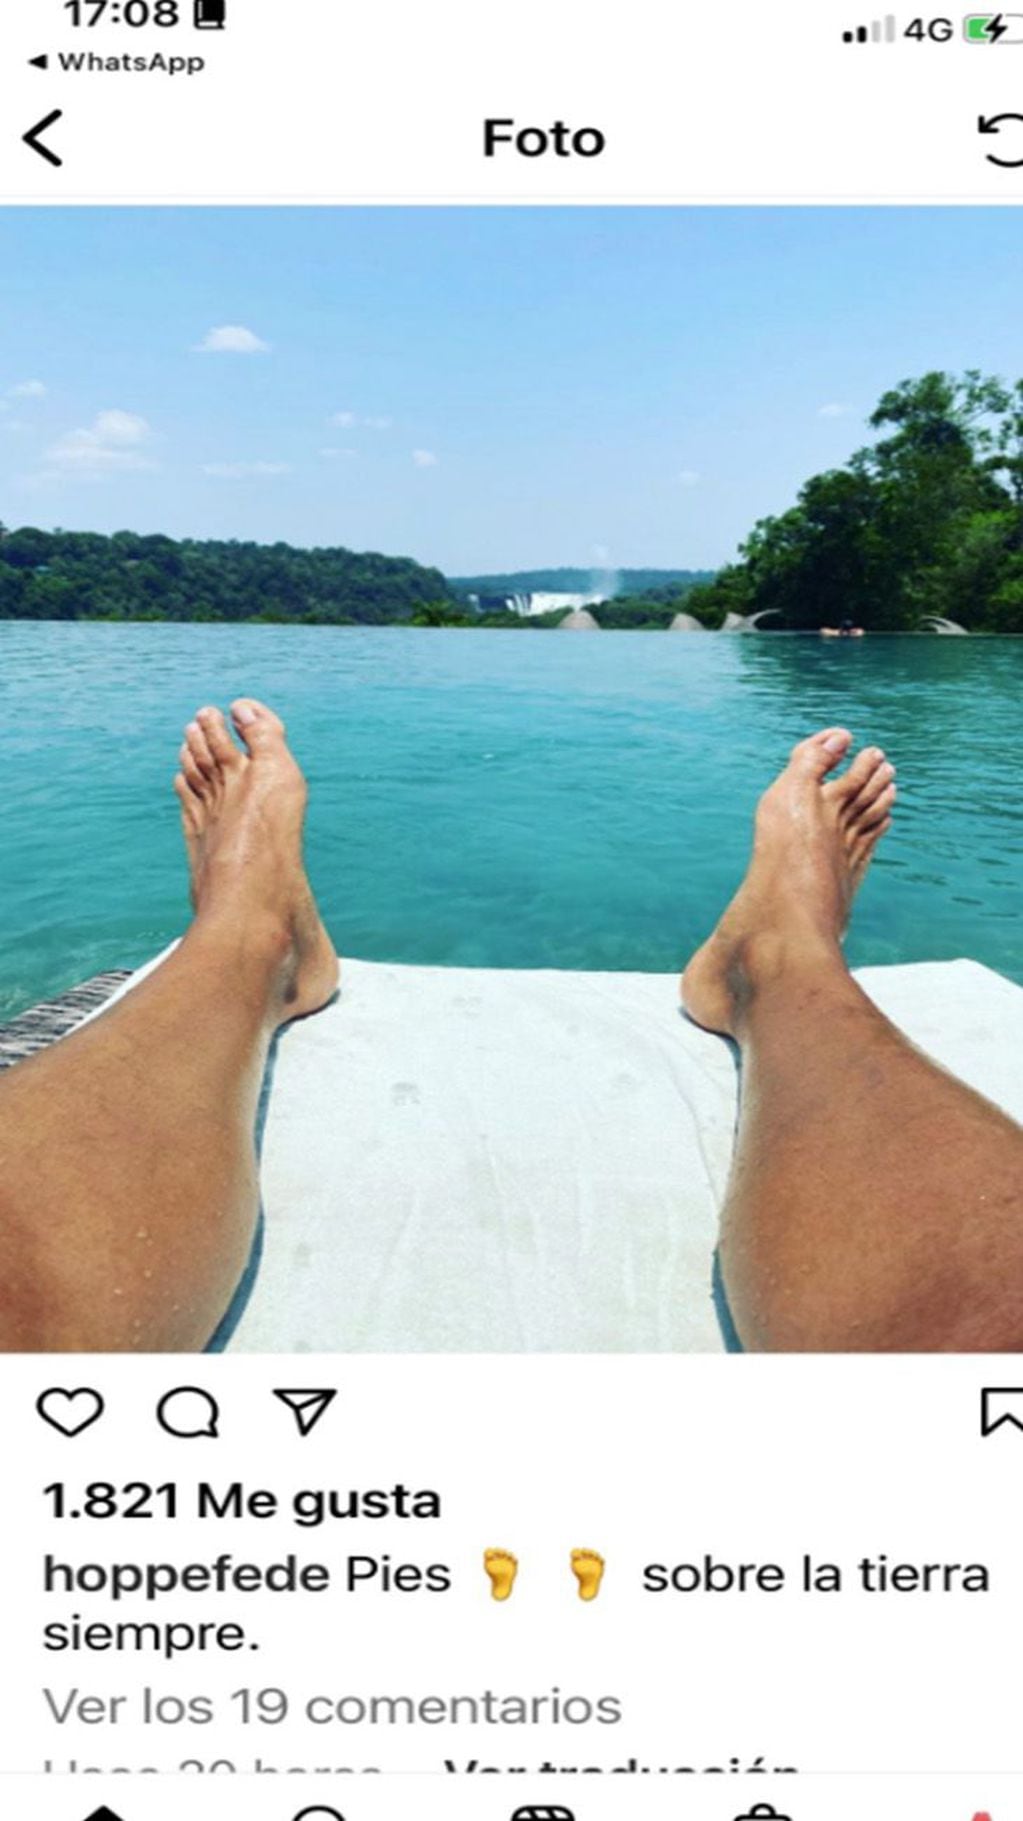 En su Instagram, Hoppe escribió: "Pies sobre la tierra siempre"